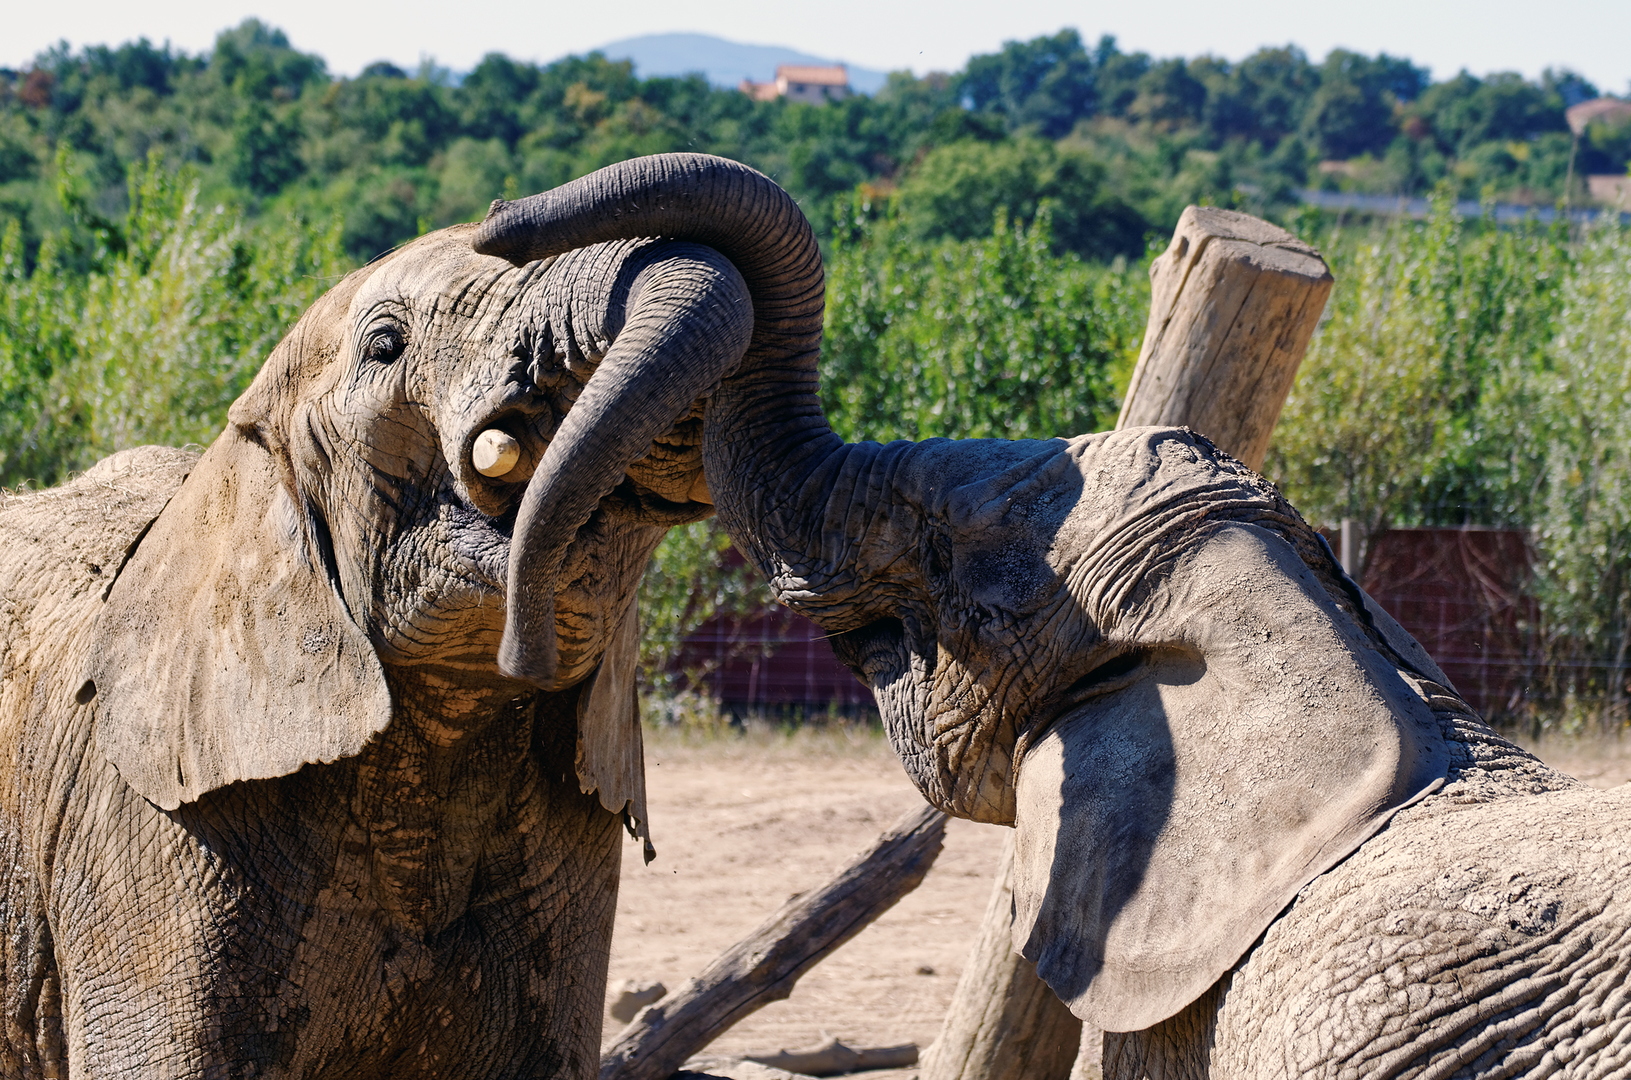 Éléphants d'Afrique - DSC_0188_DxO.jpg